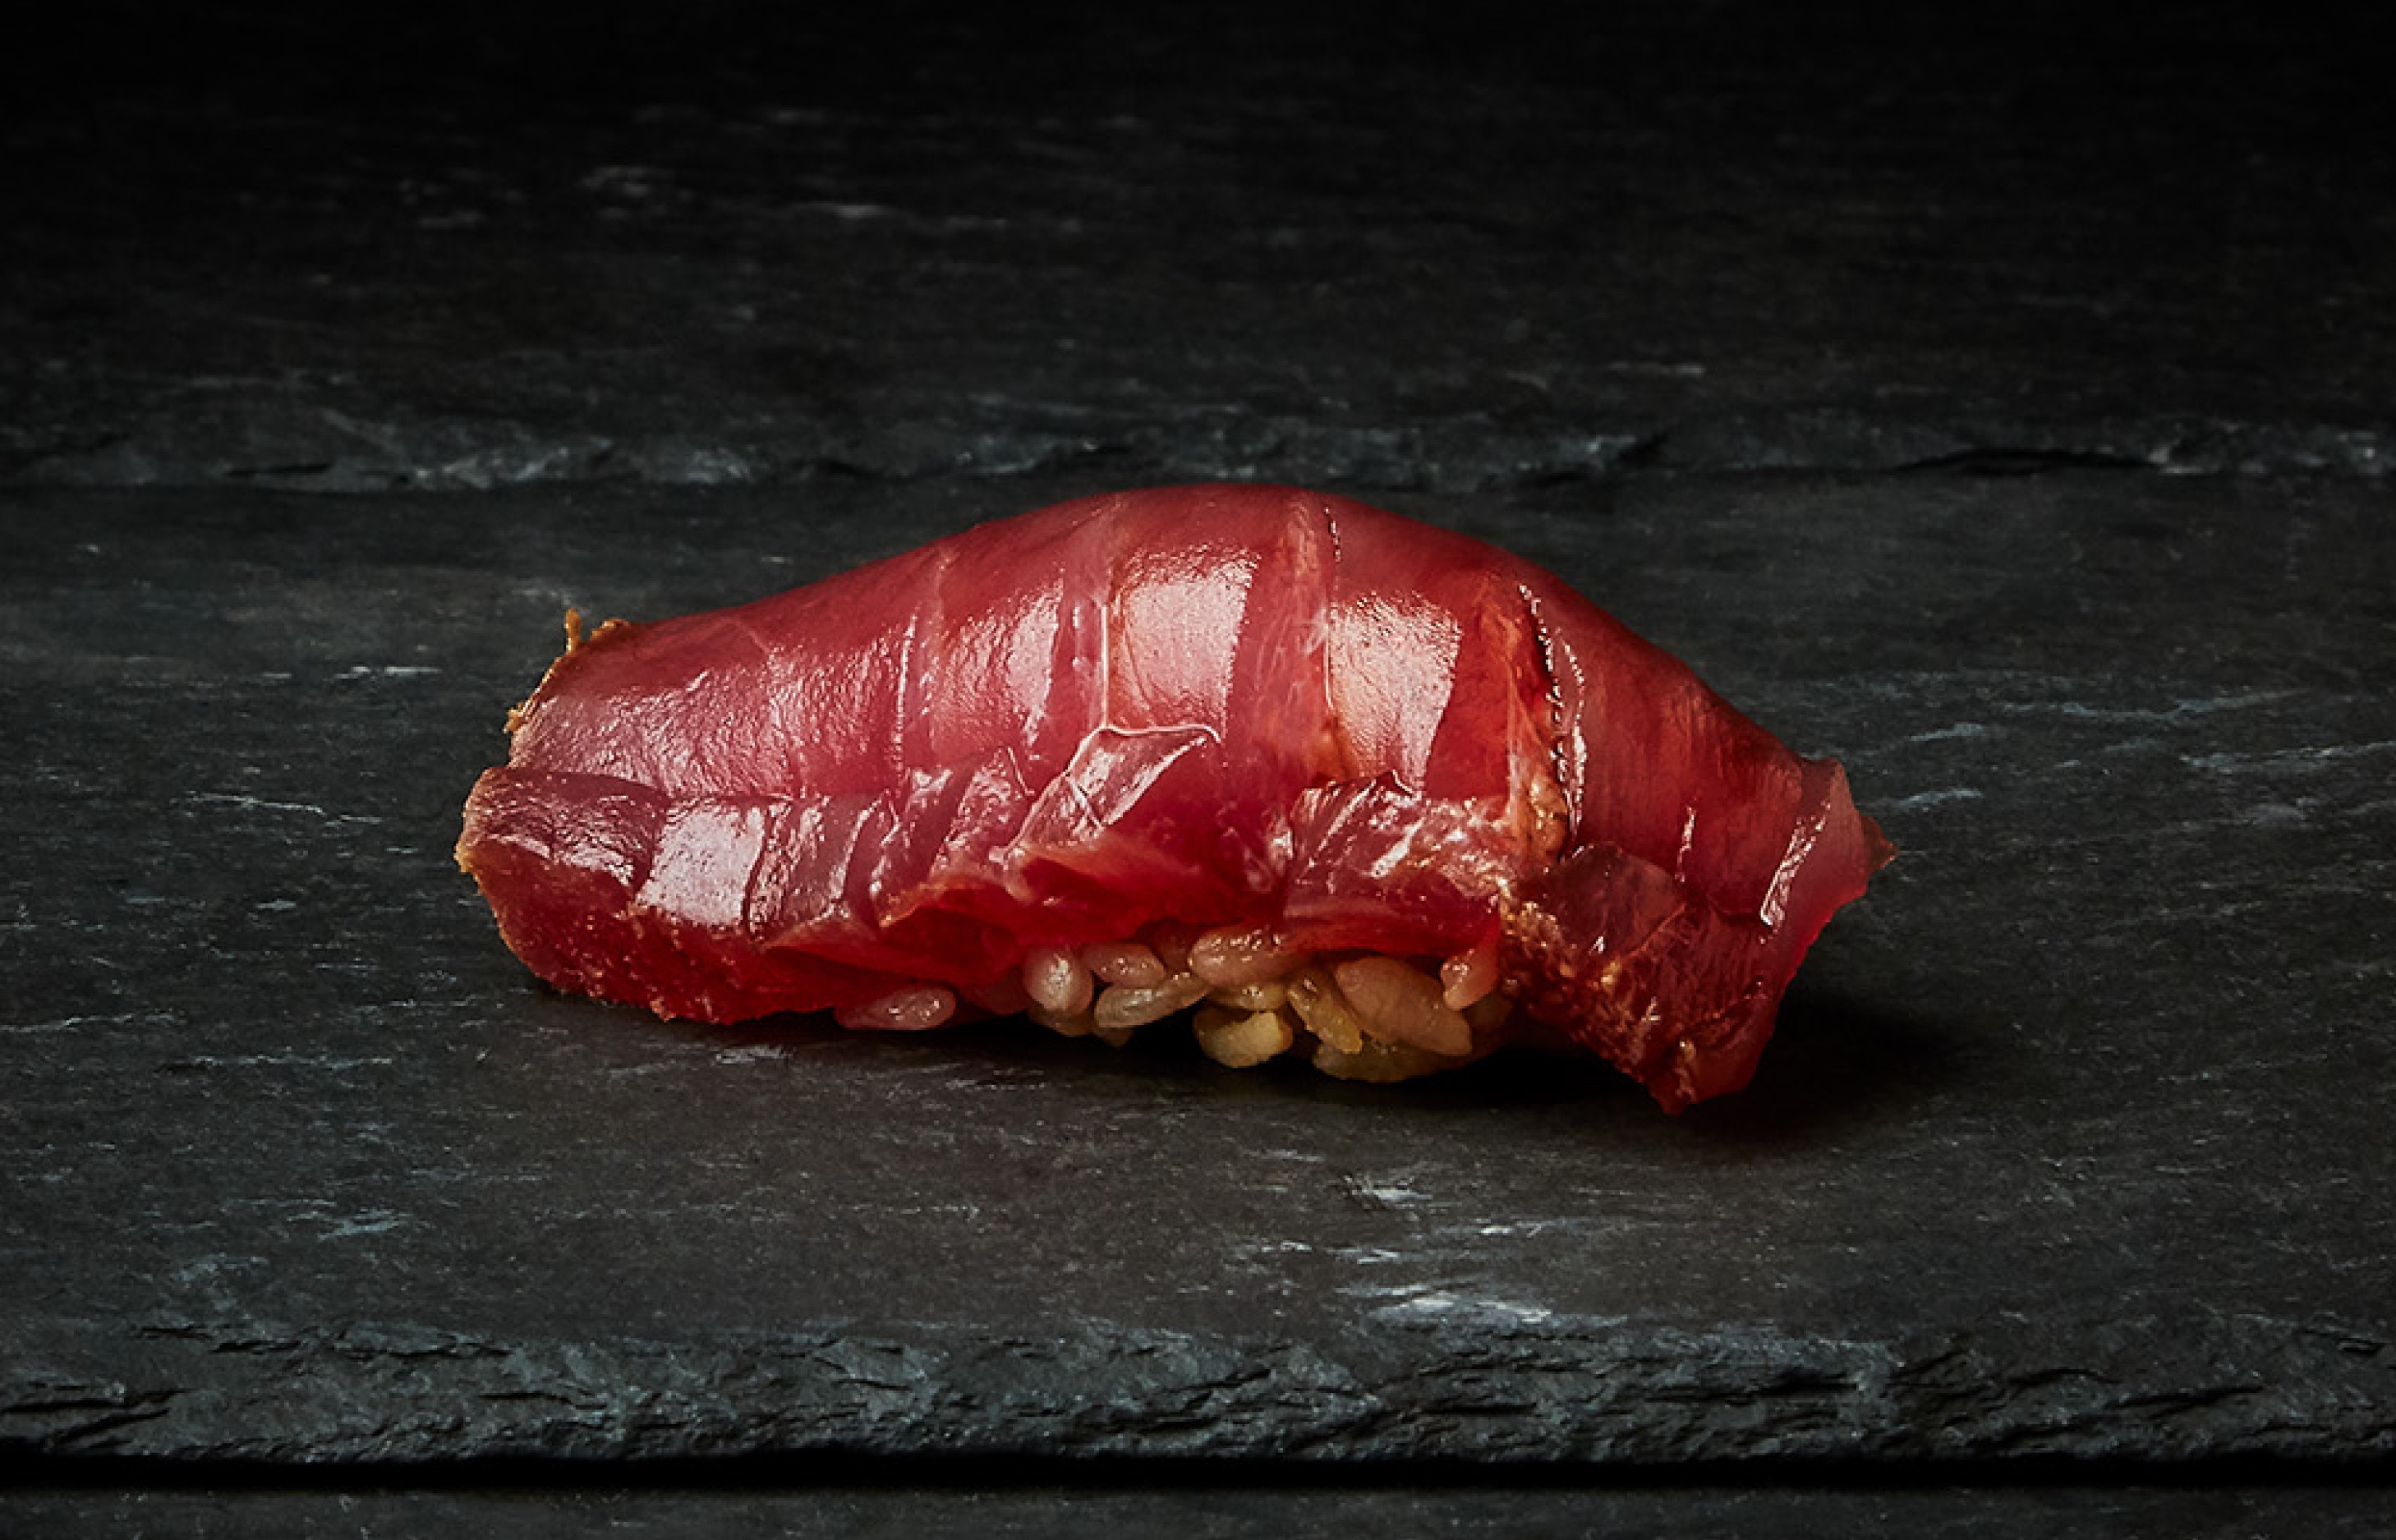 Sojagravad tonfisk Akami tsuke. Görs med röd risvinäger i risblandningen – en gammal risvinägerstil som användes i originalversionen av edomae sushi. Den görs på det överblivna riset från mäsken vid saketillverkning som sedan oxiderar, vilket leder till den röda färgen. Detta ger en lite mer rustik smak.